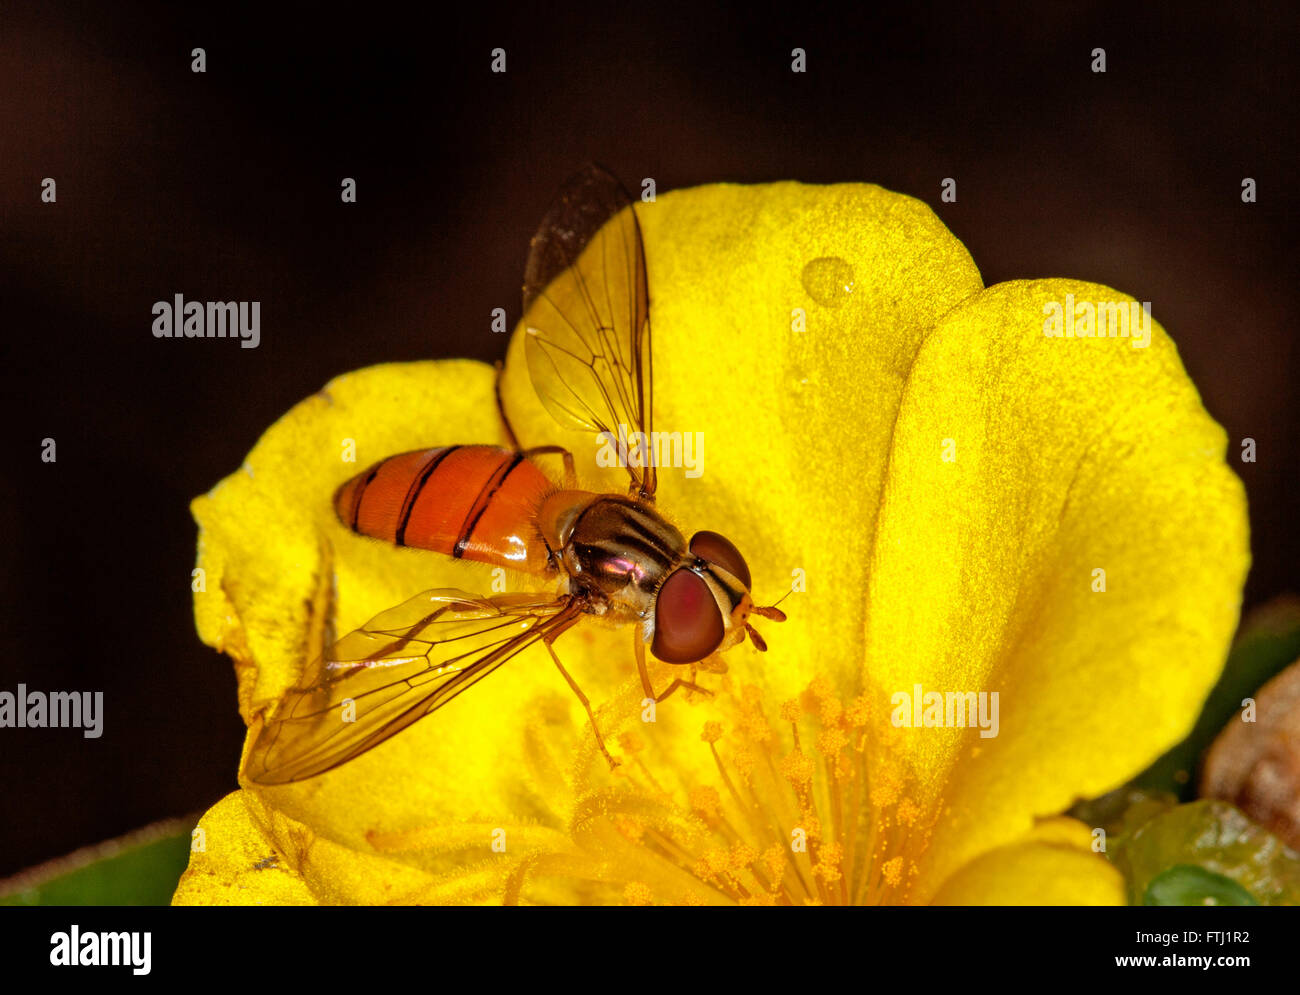 Splendide immagine macro di black-nastrare hover fly Episyrphus specie con grandi occhi, sul luminoso fiore giallo su sfondo scuro Foto Stock